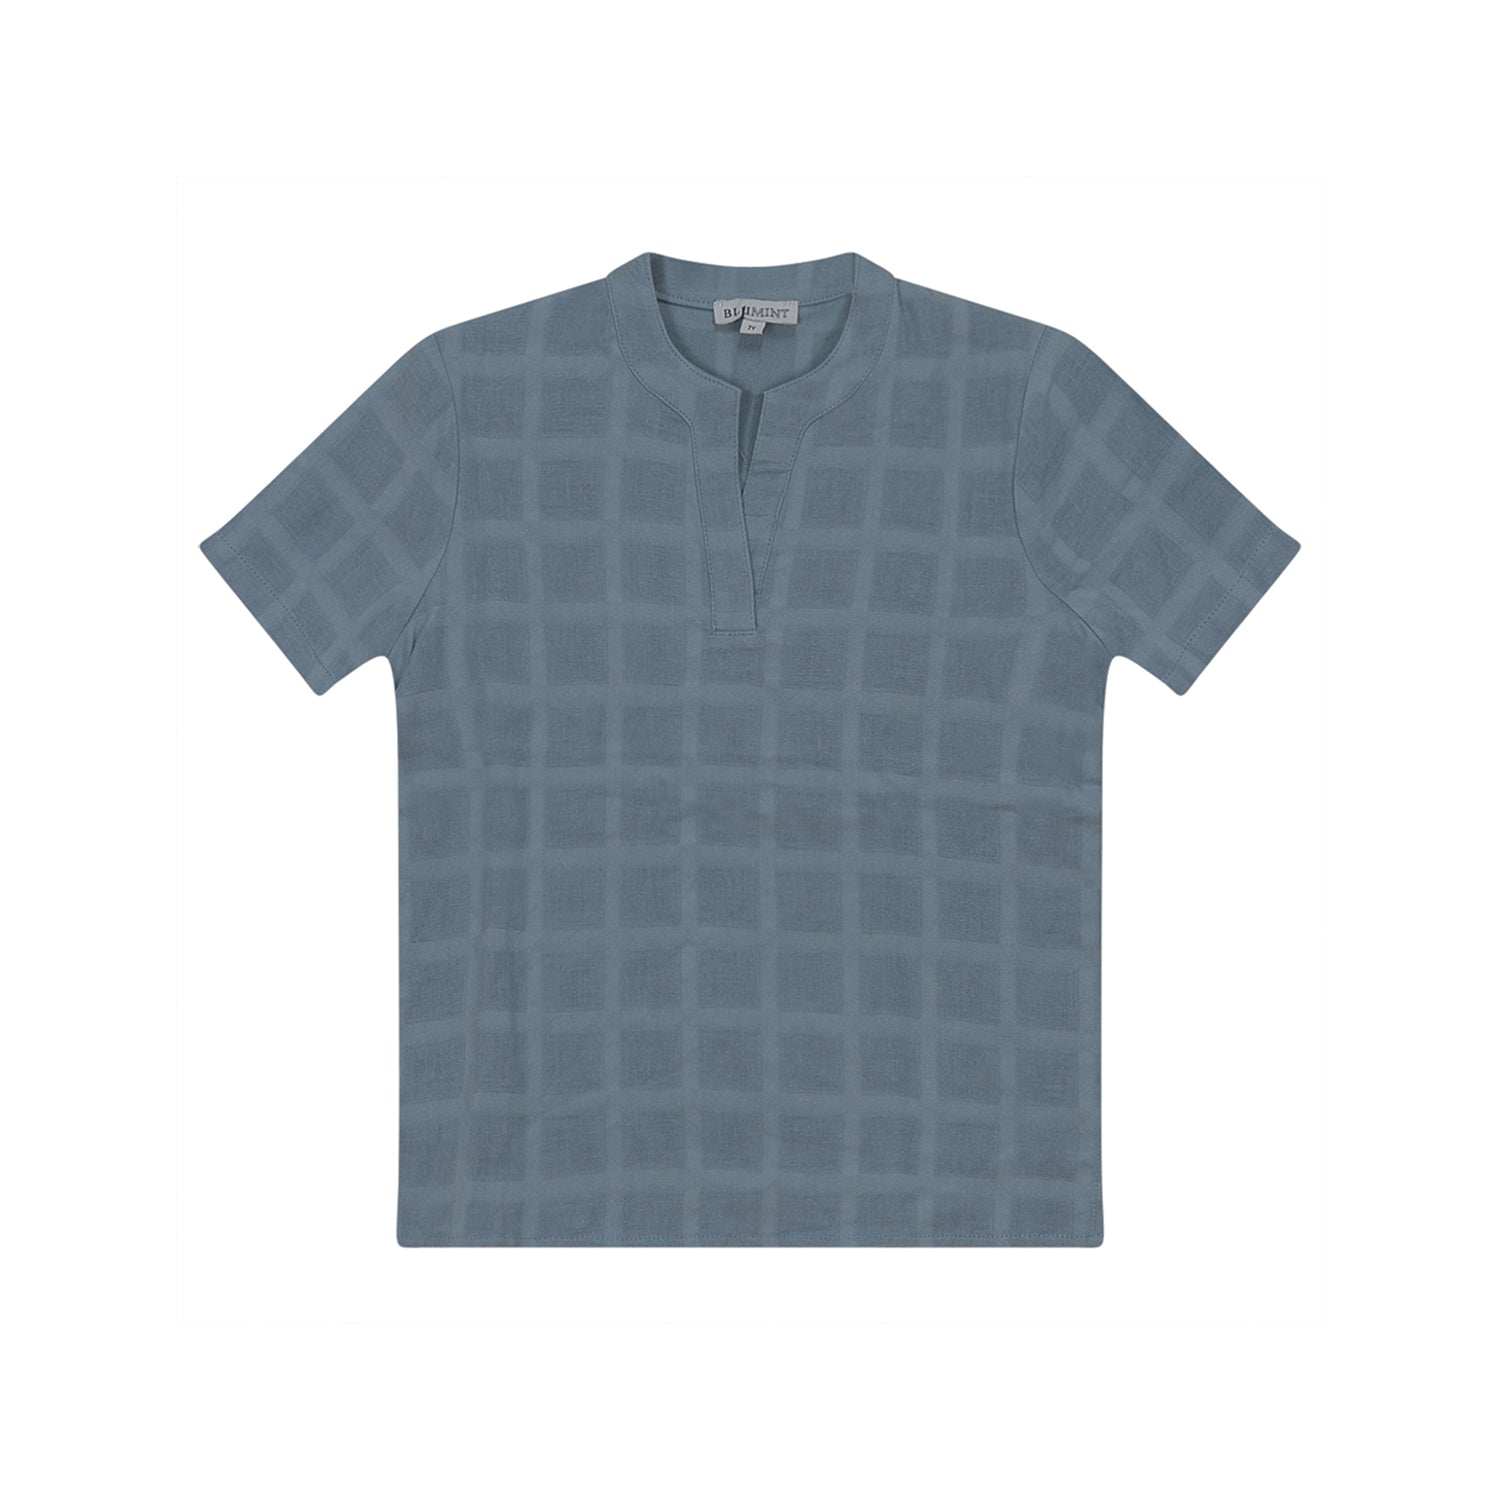 Blumint Textured Shirt - Powder Blue